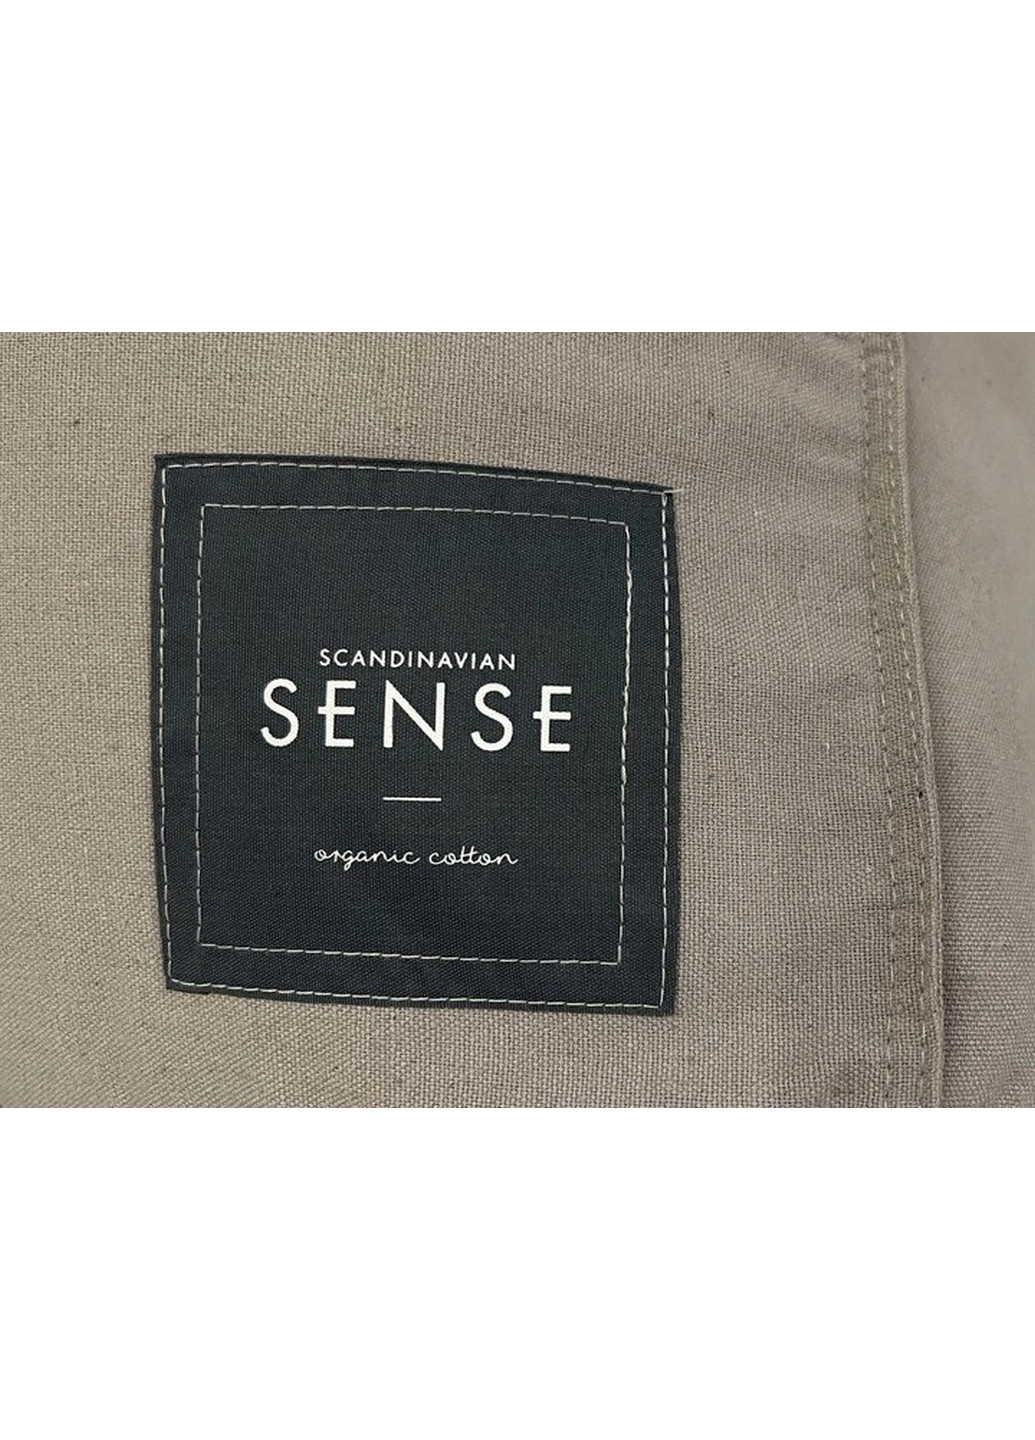 Чехол, сумка - органайзер для постельных принадлежностей Sense No Brand (276983616)